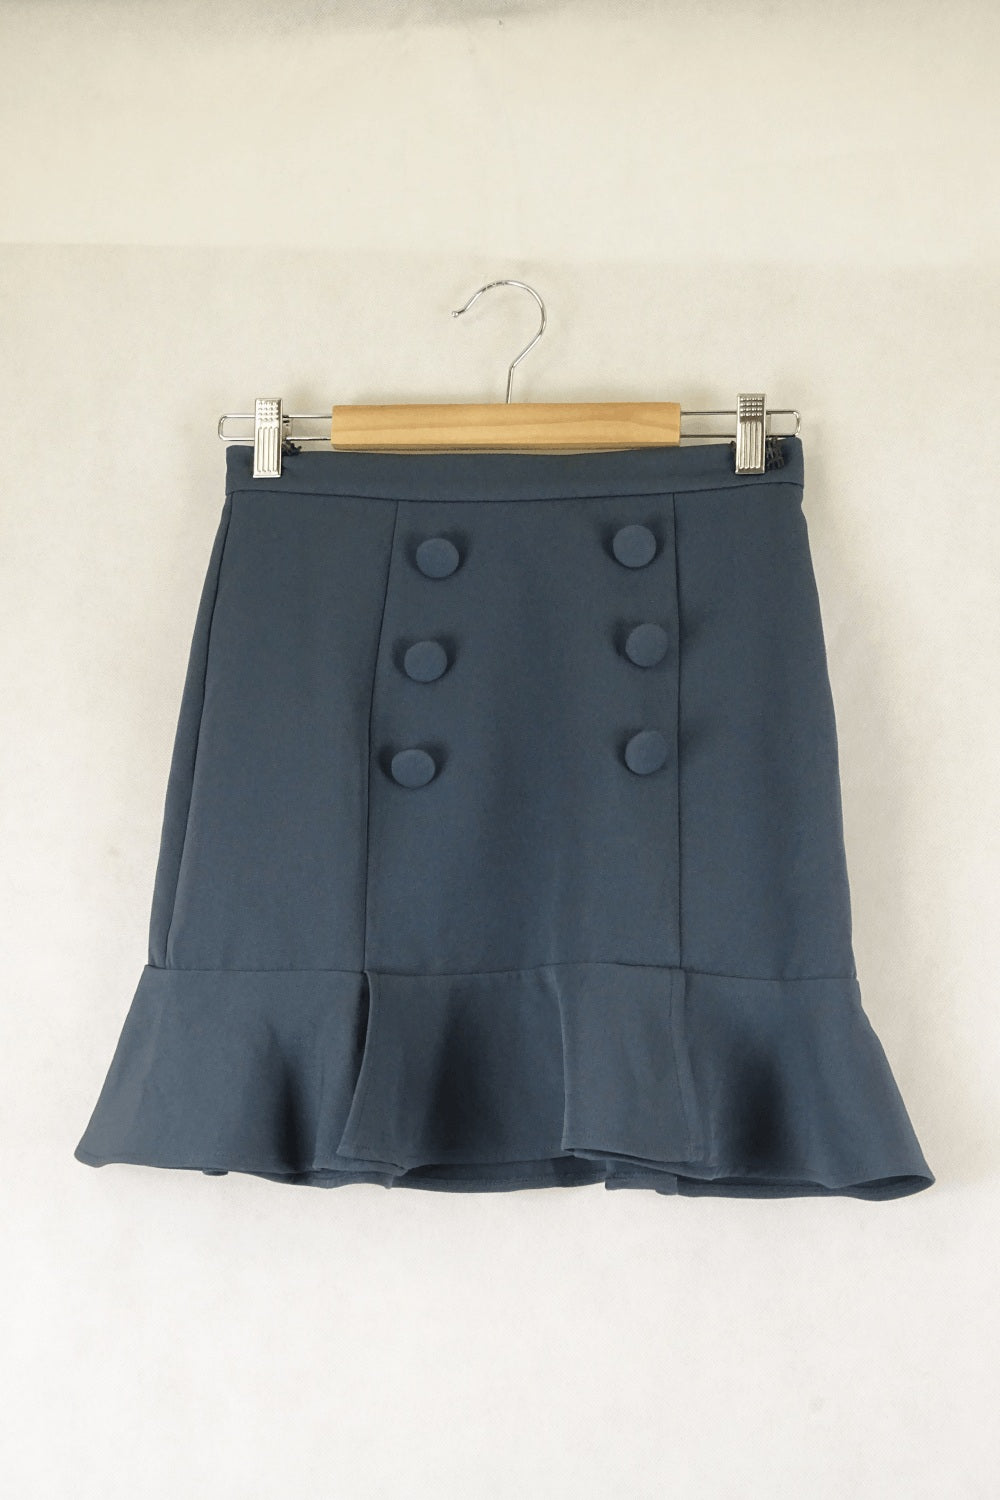 Asos Blue Skirt 8